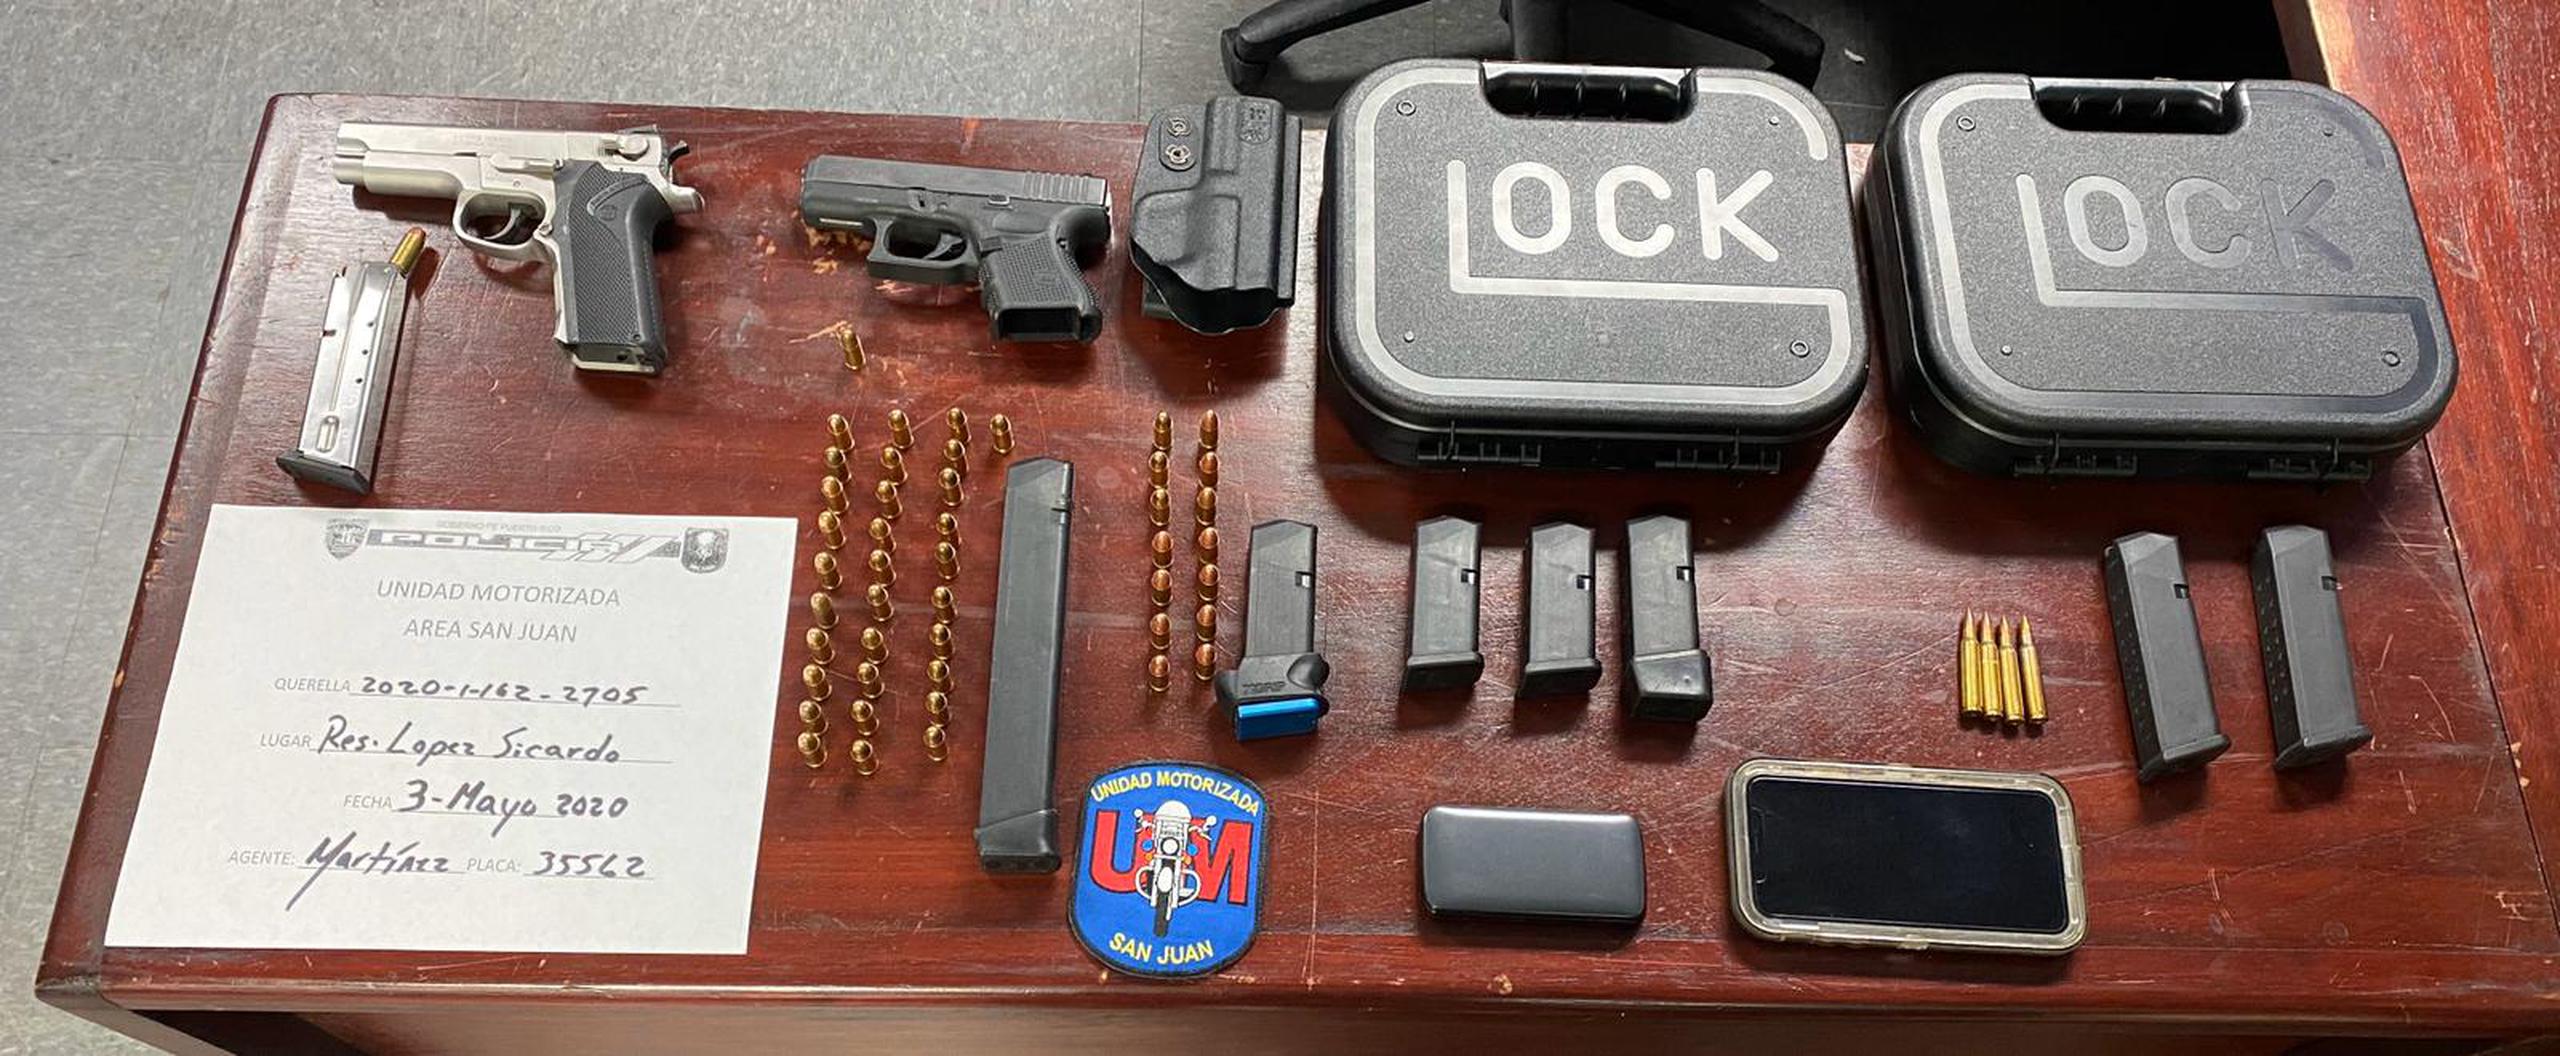 Dos de las armas de fuego, cargadores y balas robadas durante un escalamiento en la residencia de un agente federal fueron ocupadas a uno de los sospechosos.